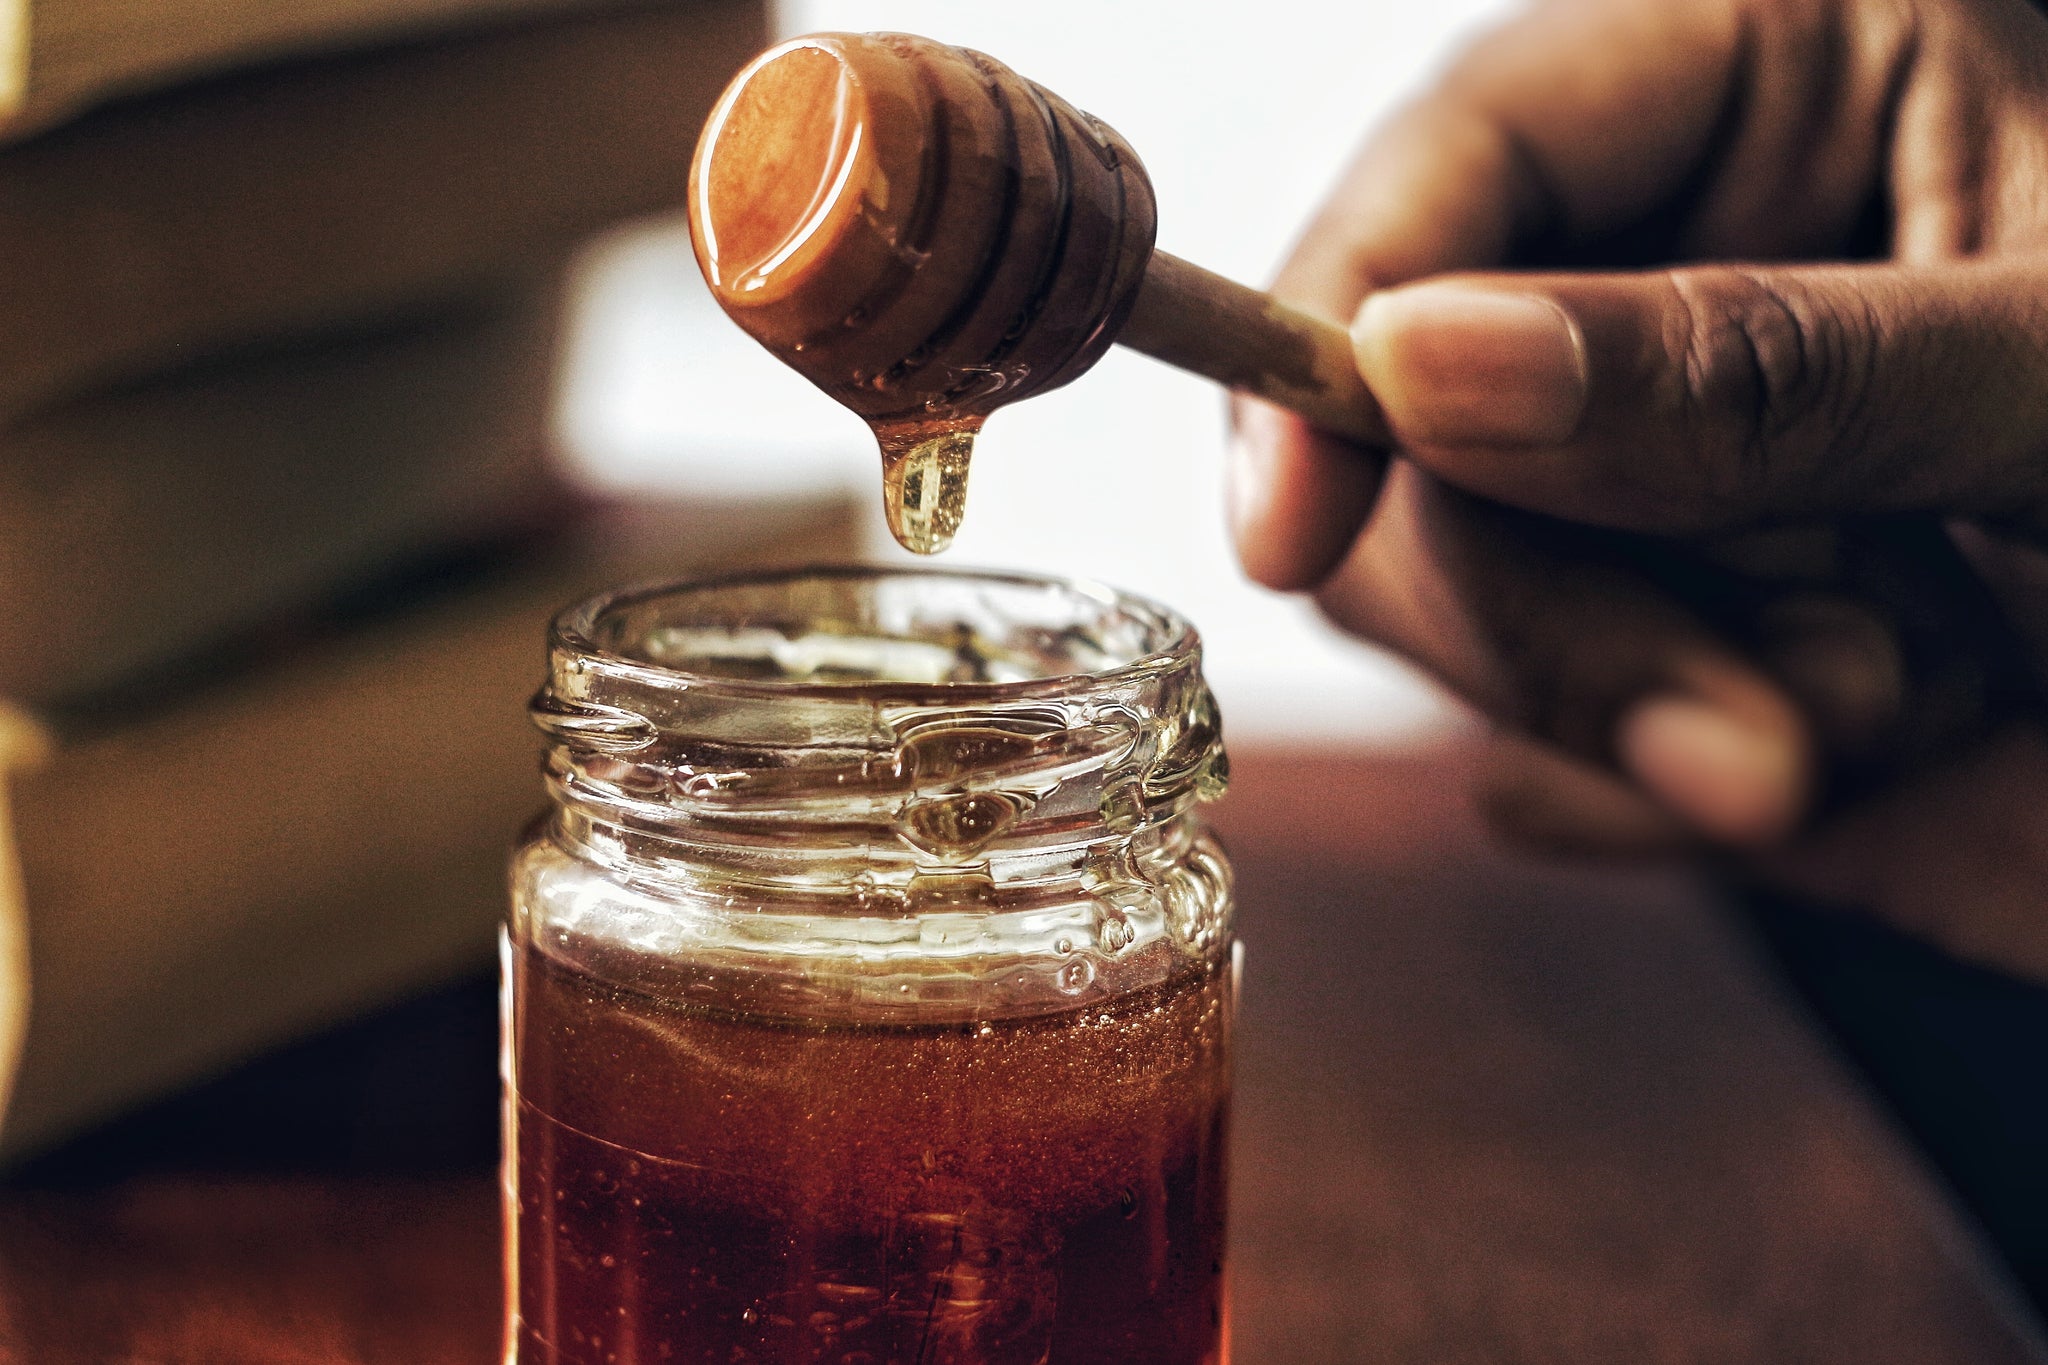 Baking with Honey: The Basics